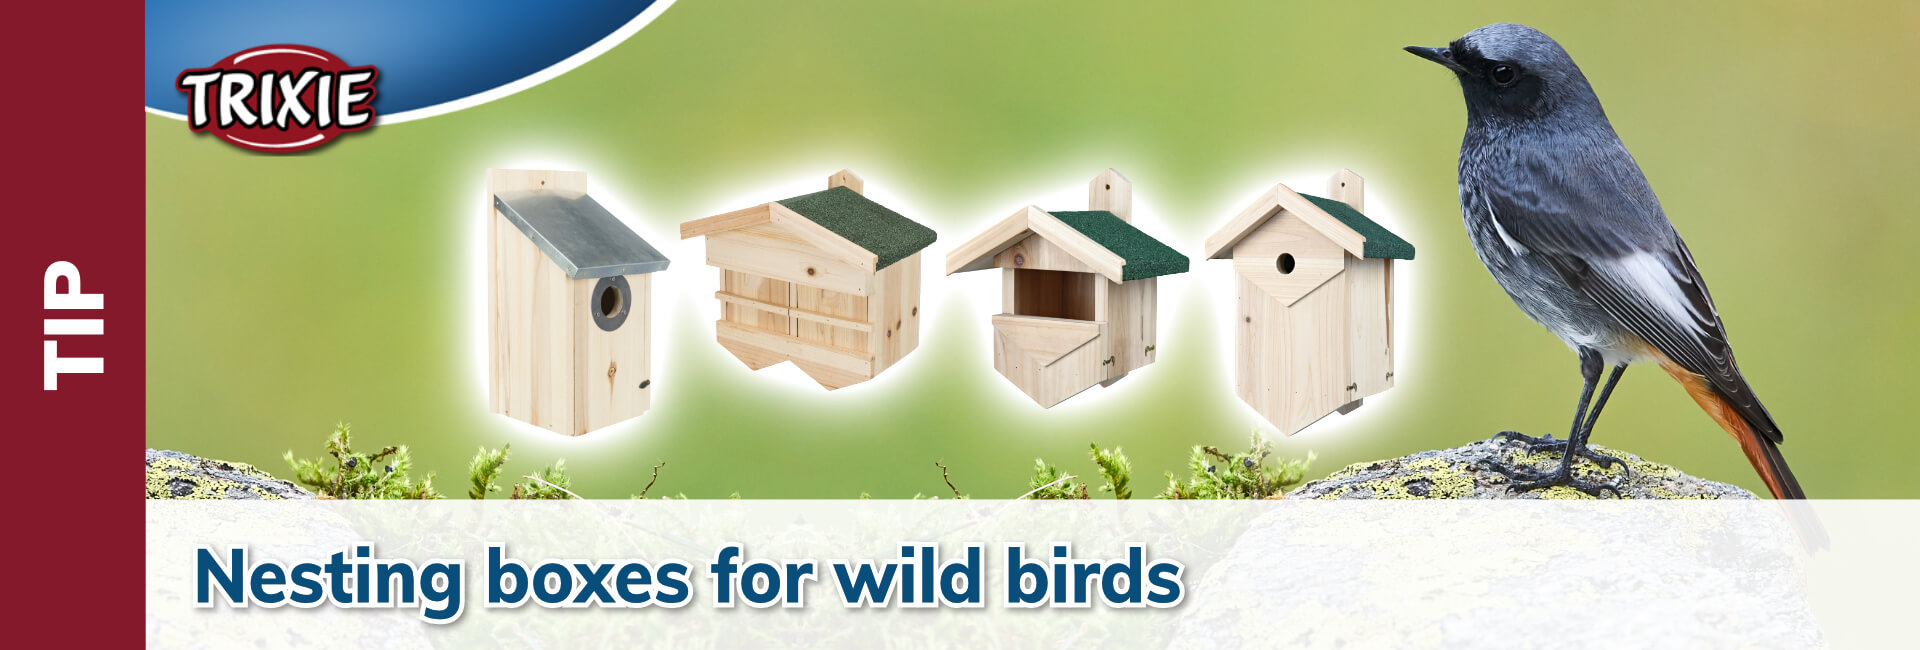 Trixie Nesting boxes for wild birds